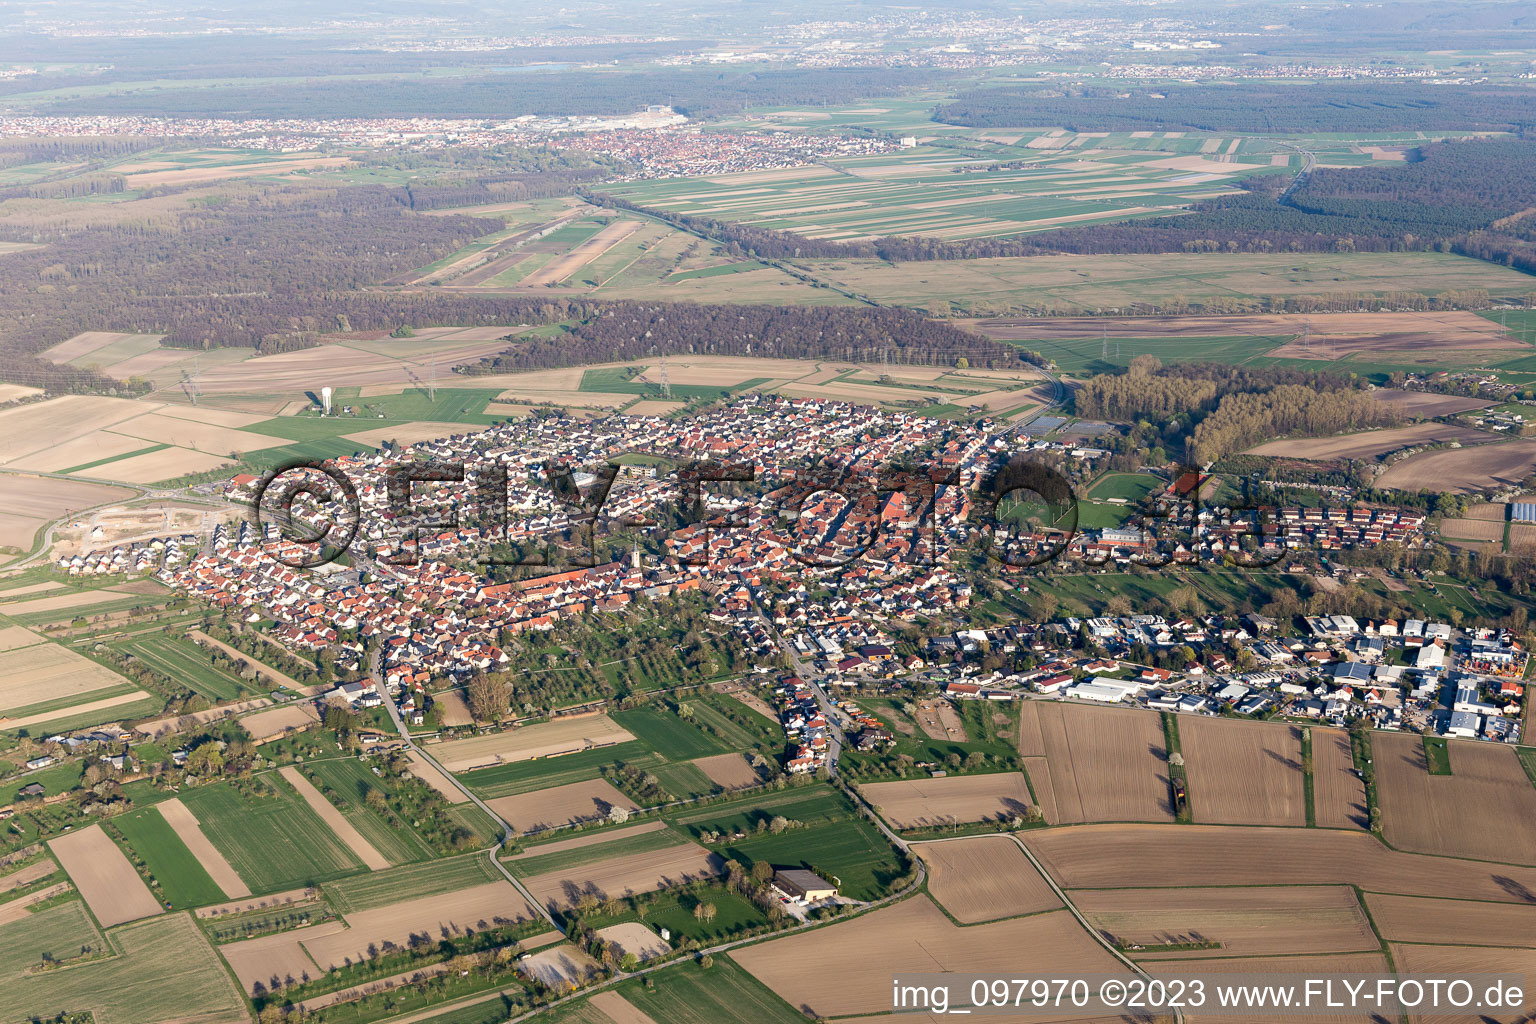 Dettenheim dans le département Bade-Wurtemberg, Allemagne vue d'en haut